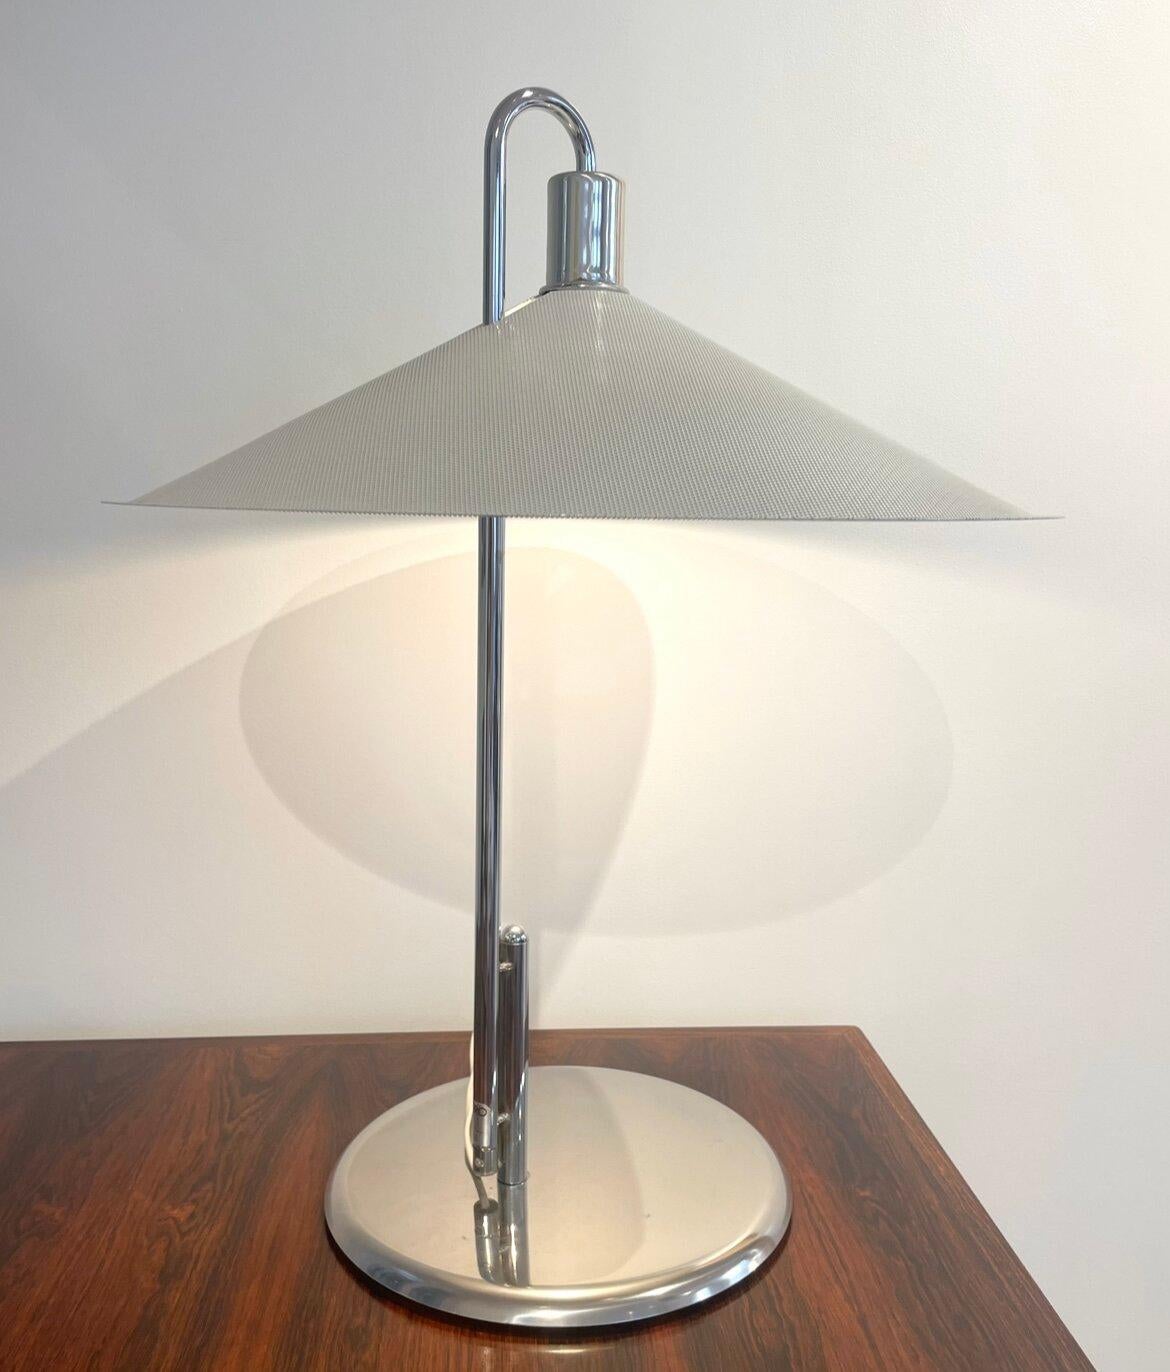 Diese von den schwedischen Designern Lindau und Lindekrantz in den 70er Jahren für den Verlag Zero entworfene Tischleuchte hat eine sehr grafische Linie, die durch den großen Lampenschirm aus lackiertem und perforiertem Metall noch verstärkt wird.